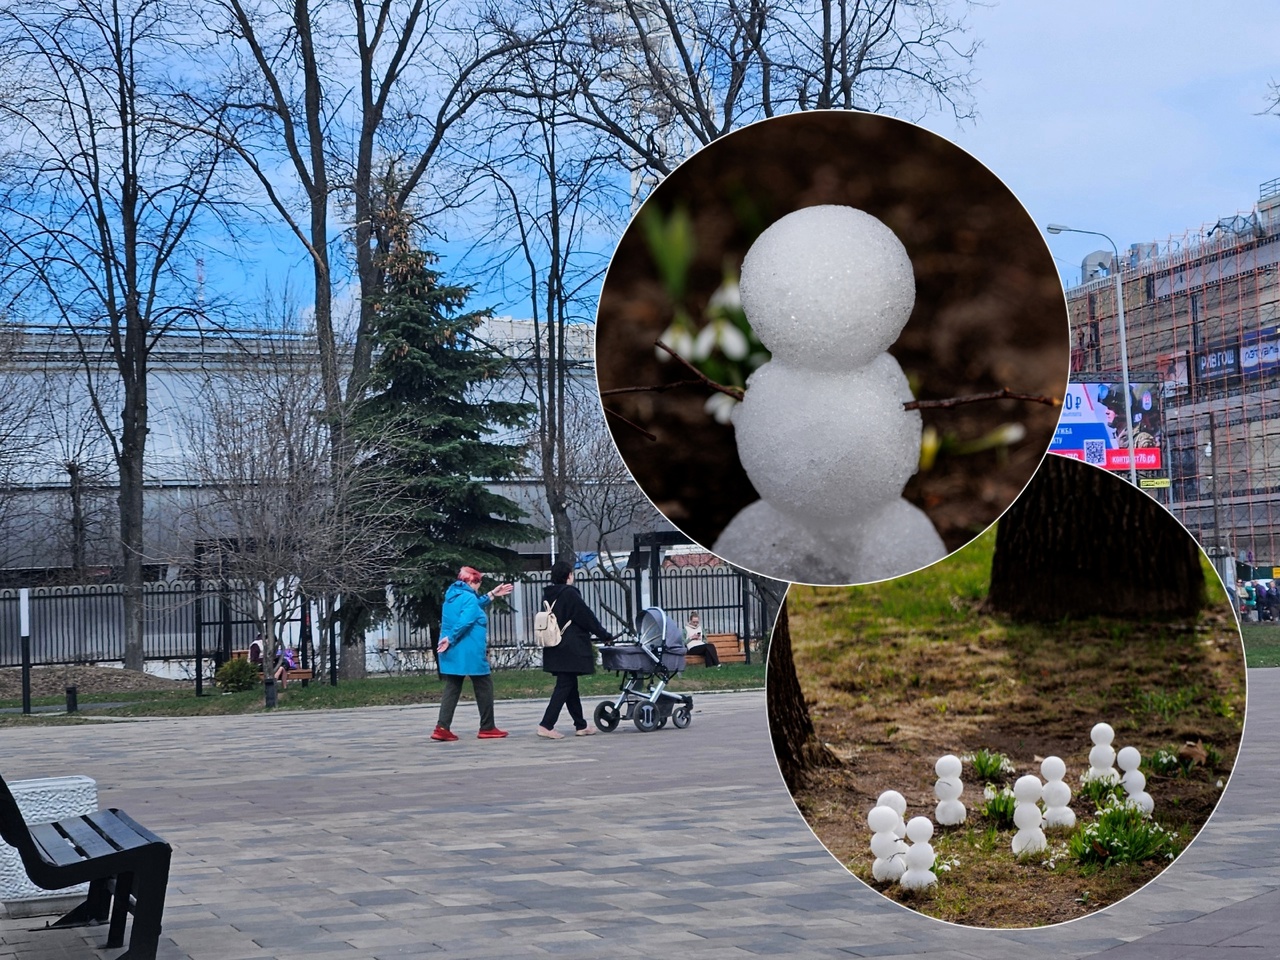 В Ярославле "выросли" мини-снеговики рядом с подснежниками